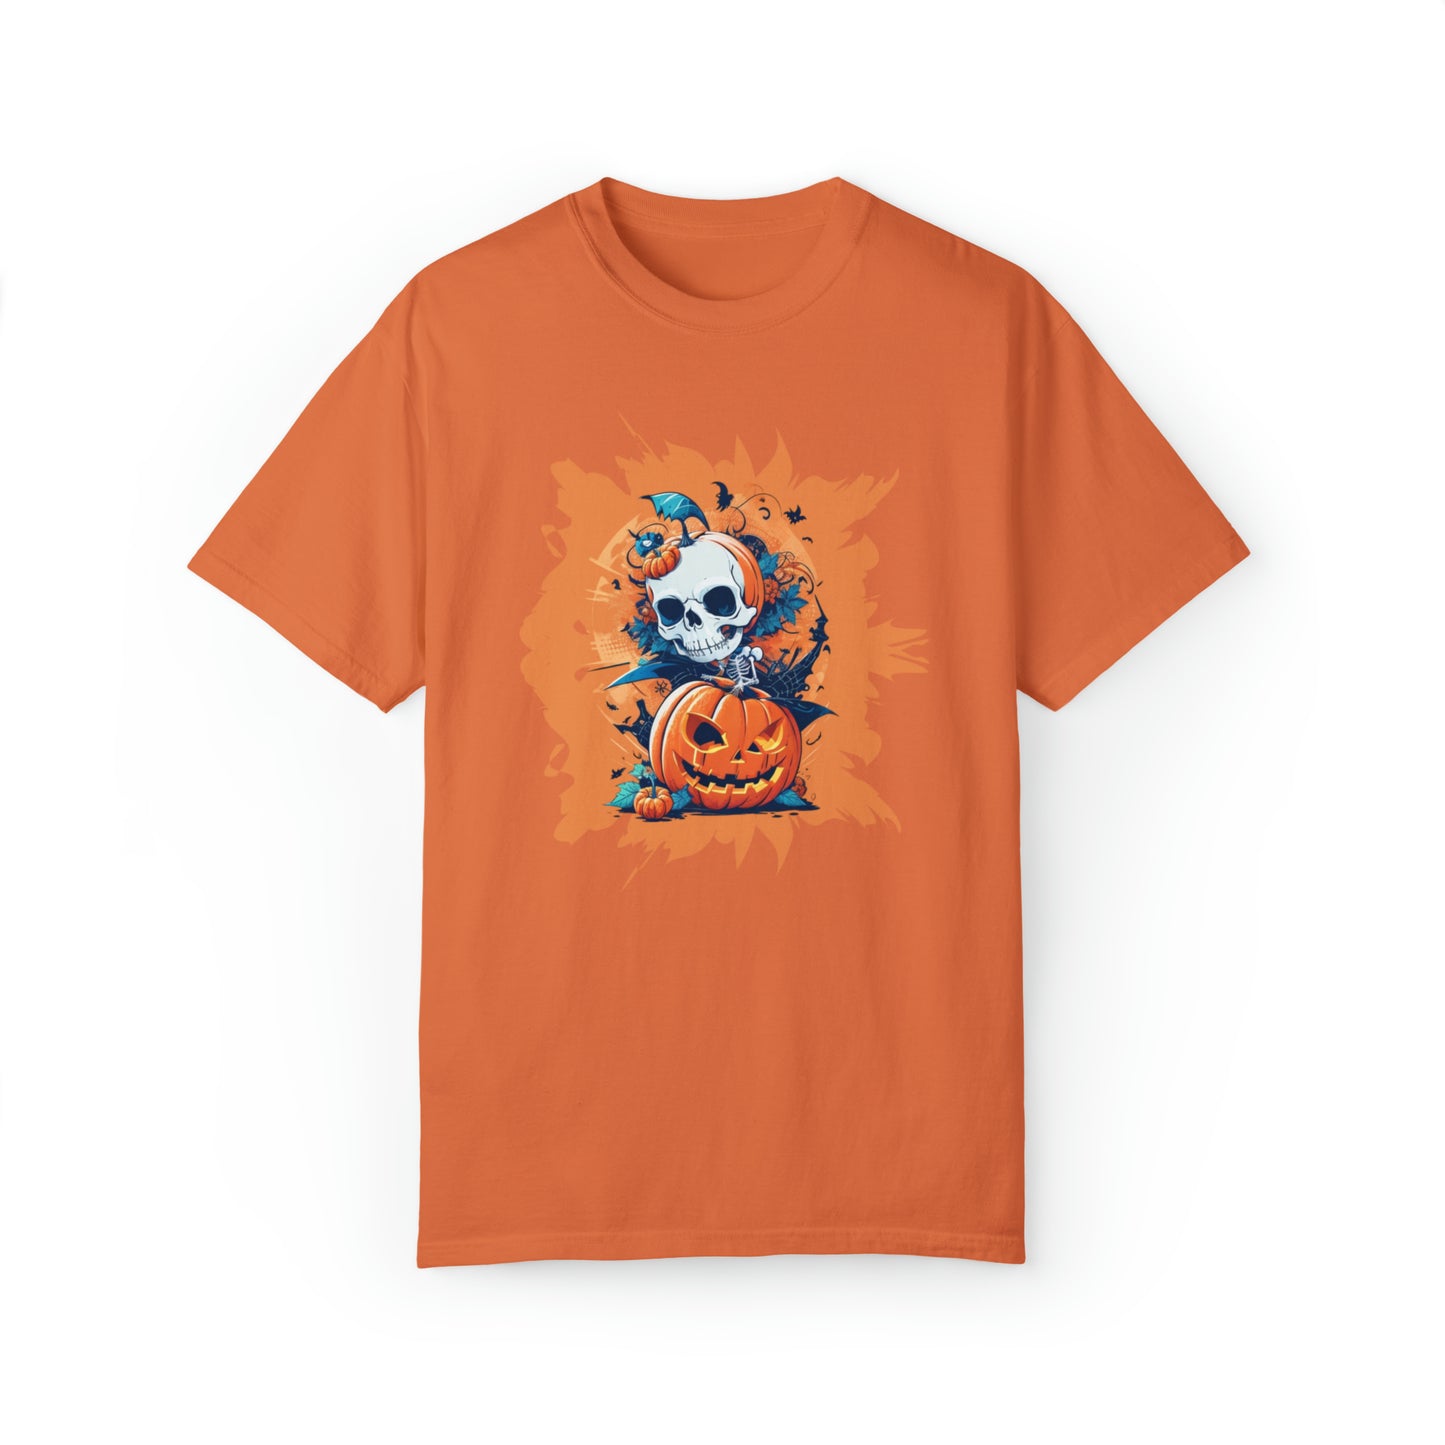 Camiseta unisex teñida en prenda - Halloween - Calavera y calabazas